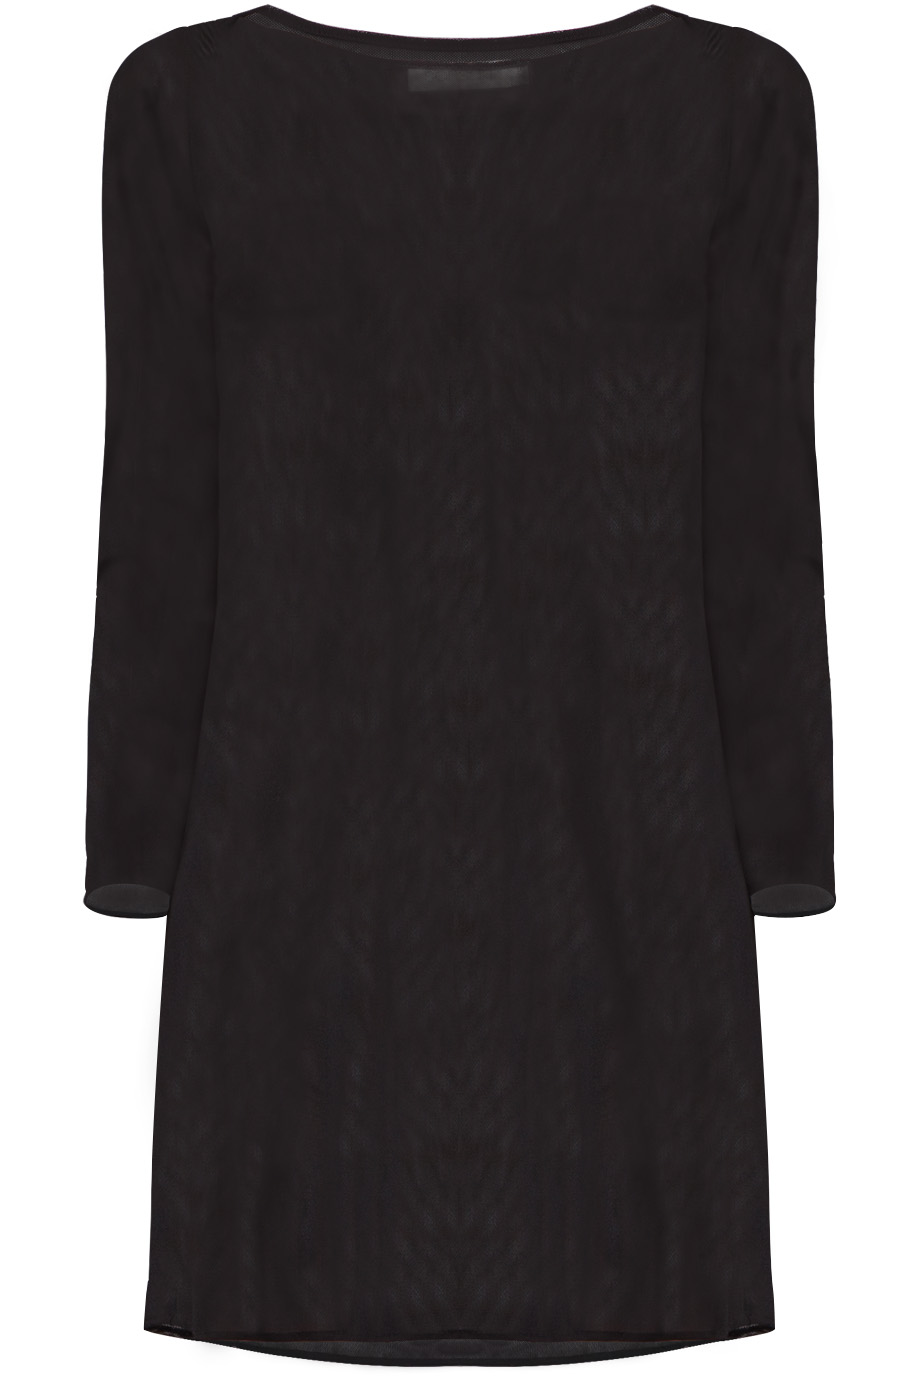 Boat-neck Long-sleeves Inner Dress/ Black 1718